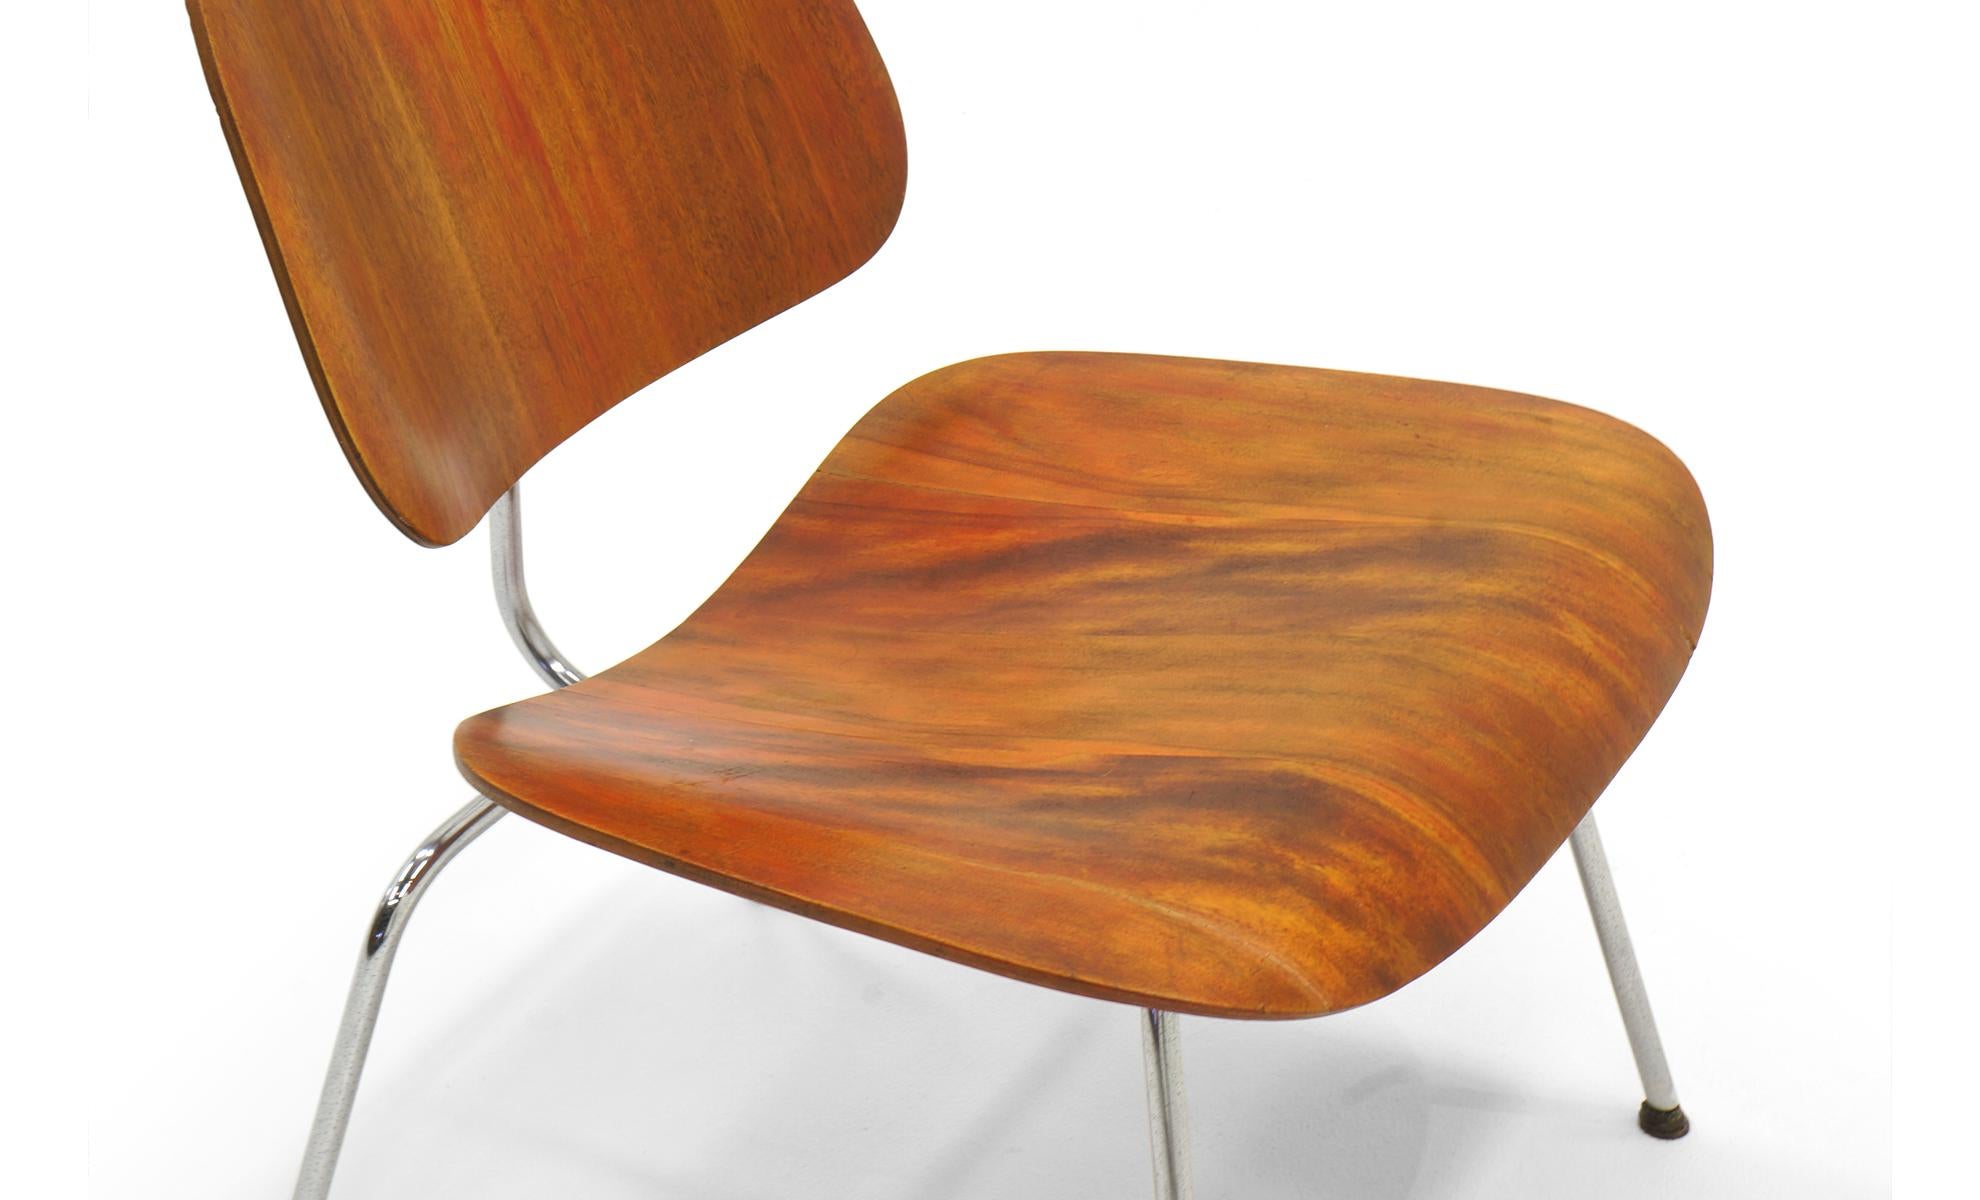 Milieu du XXe siècle Eames LCM « Lounge Chair Metal » (chaise de salon en métal teint en aniline rouge), signé avec le label Evans Label en vente